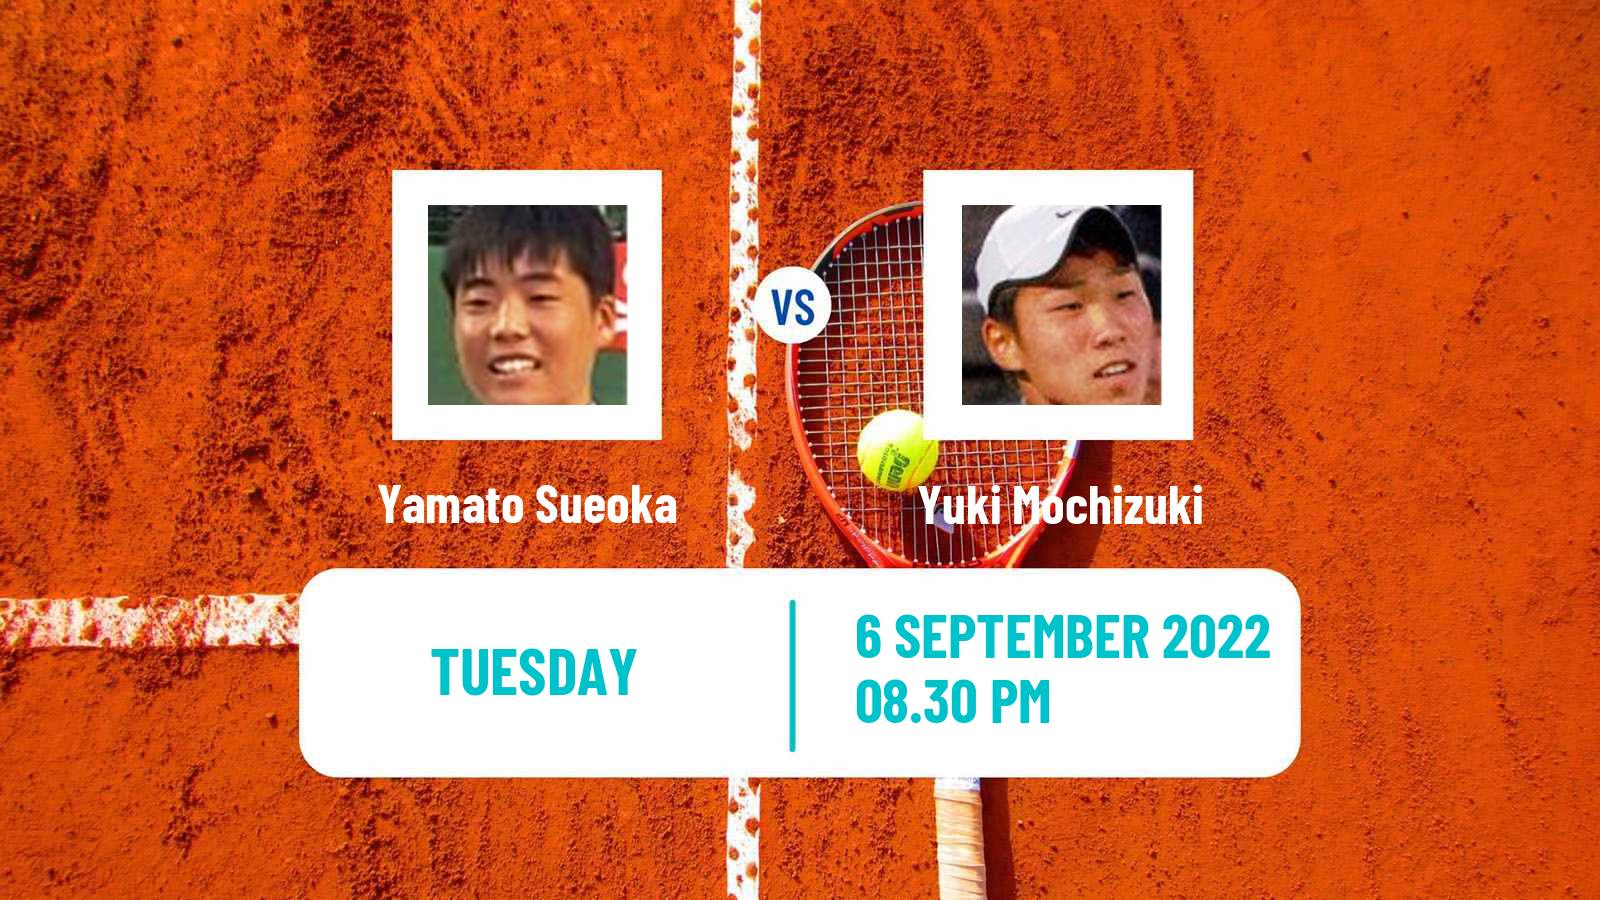 Tennis ITF Tournaments Yamato Sueoka - Yuki Mochizuki